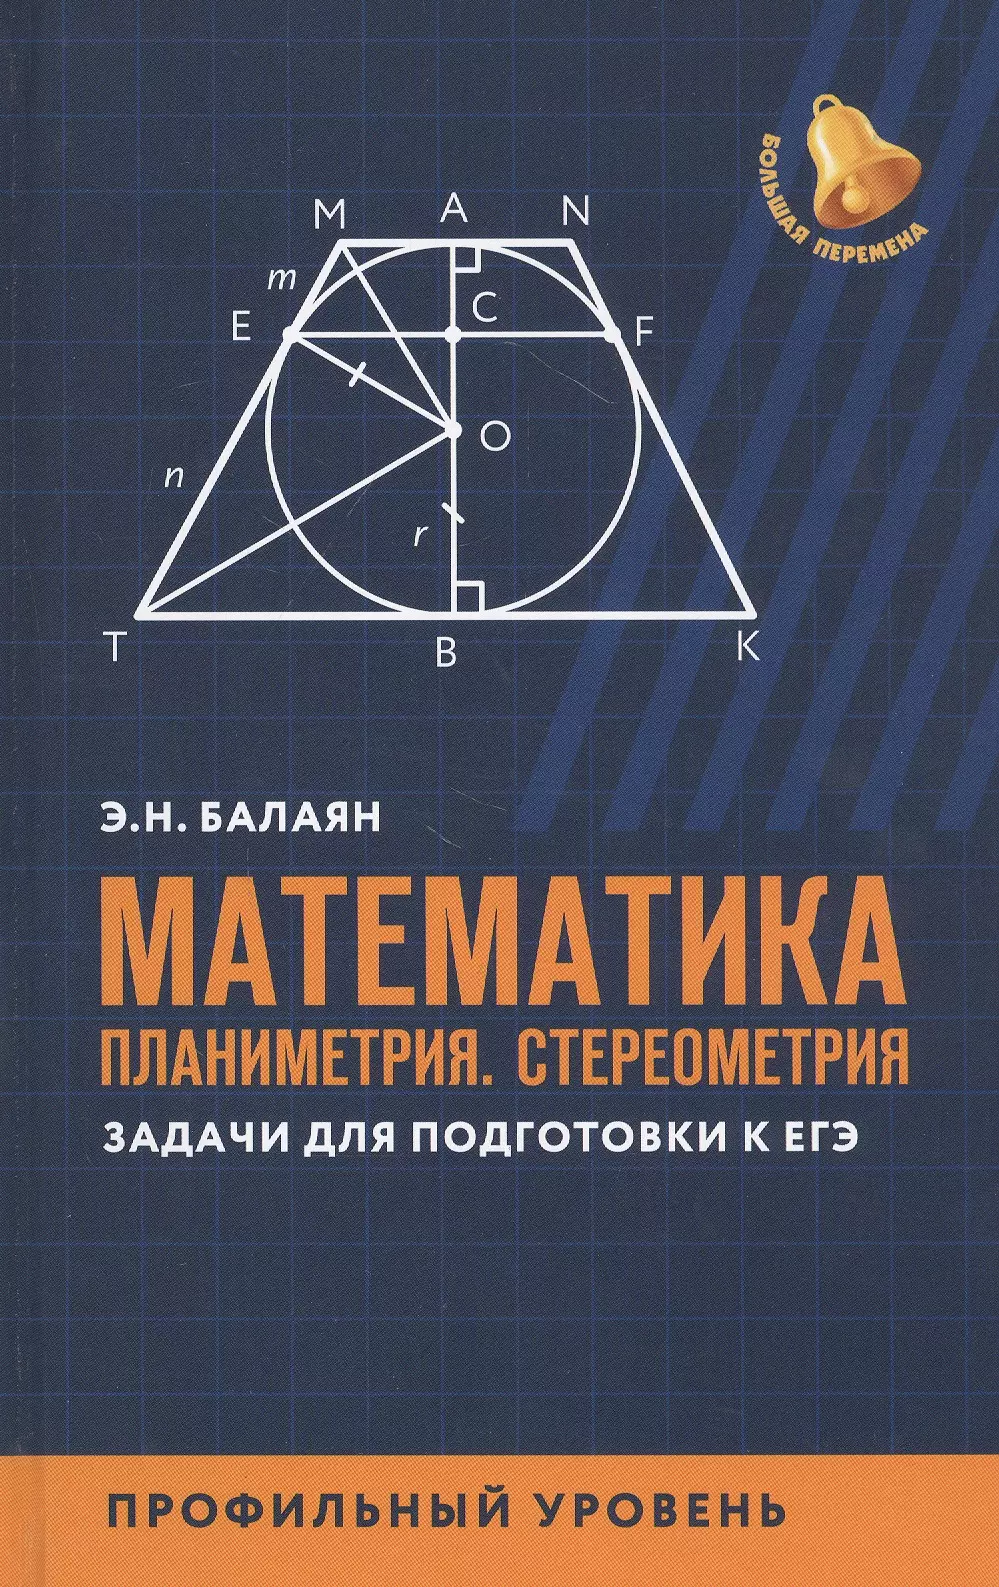 Балаян Эдуард Николаевич Математика: Планиметрия. Стереометрия. Задачи для подготовки к ЕГЭ. Профильный уровень